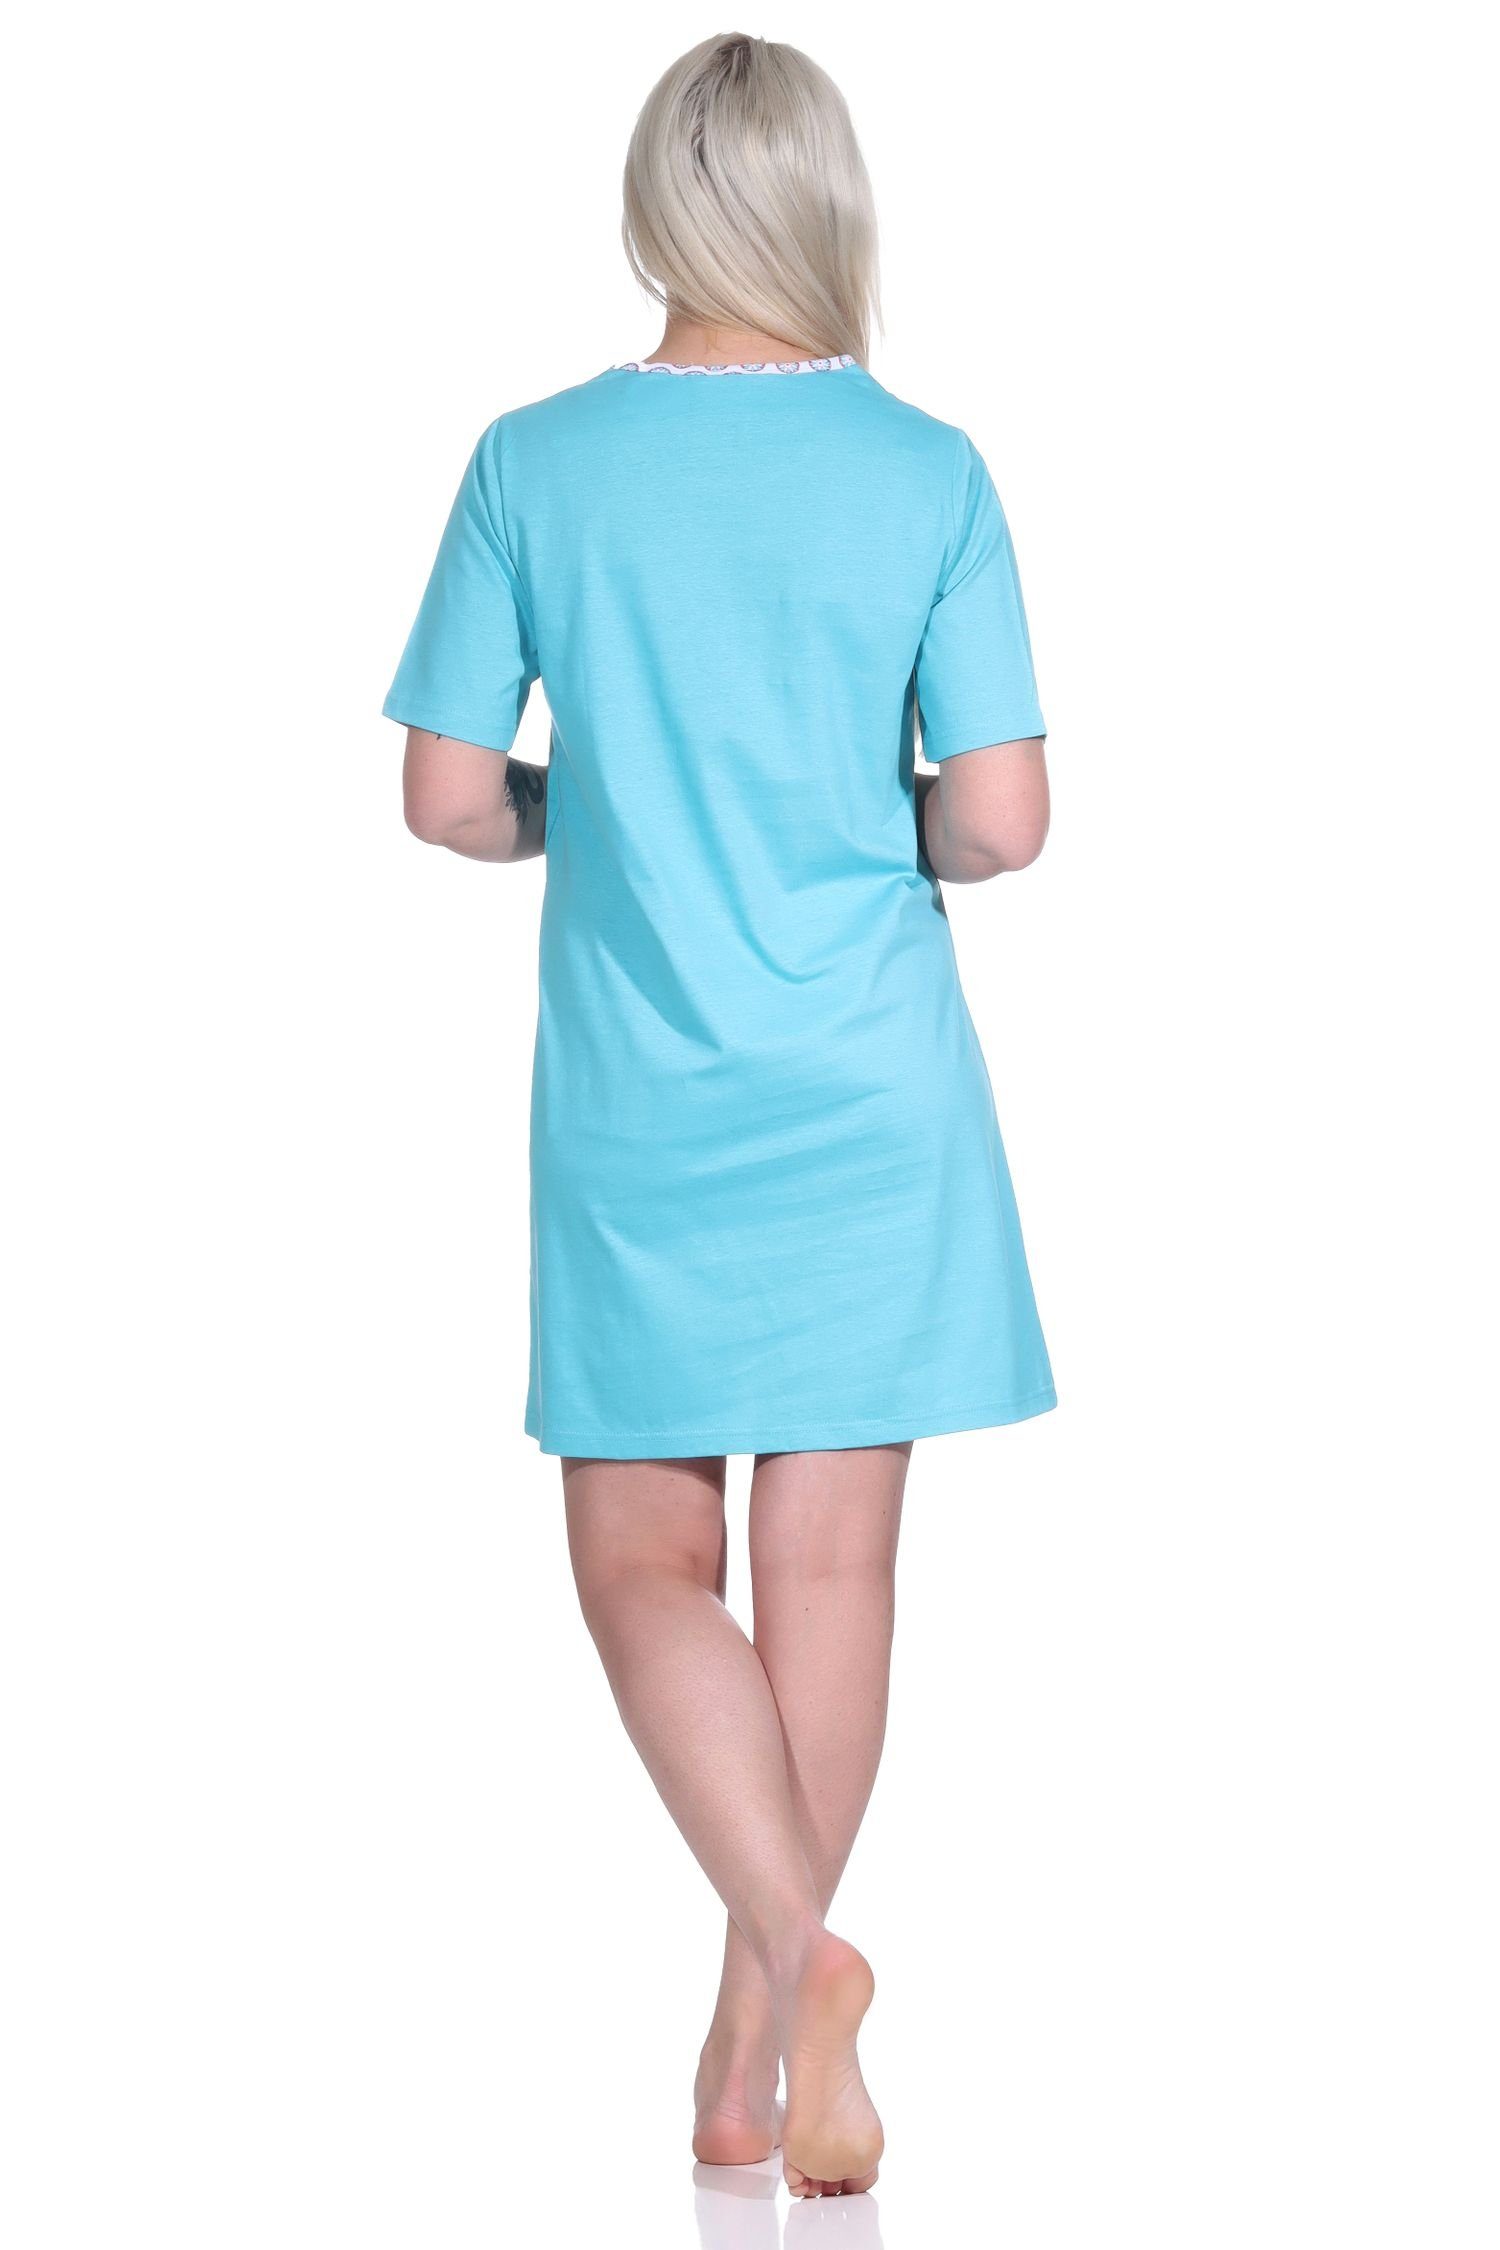 Normann Nachthemd Damen Nachthemd, kurzarm Blumen-Motiv 123 10 Bigshirt türkis mit - 153